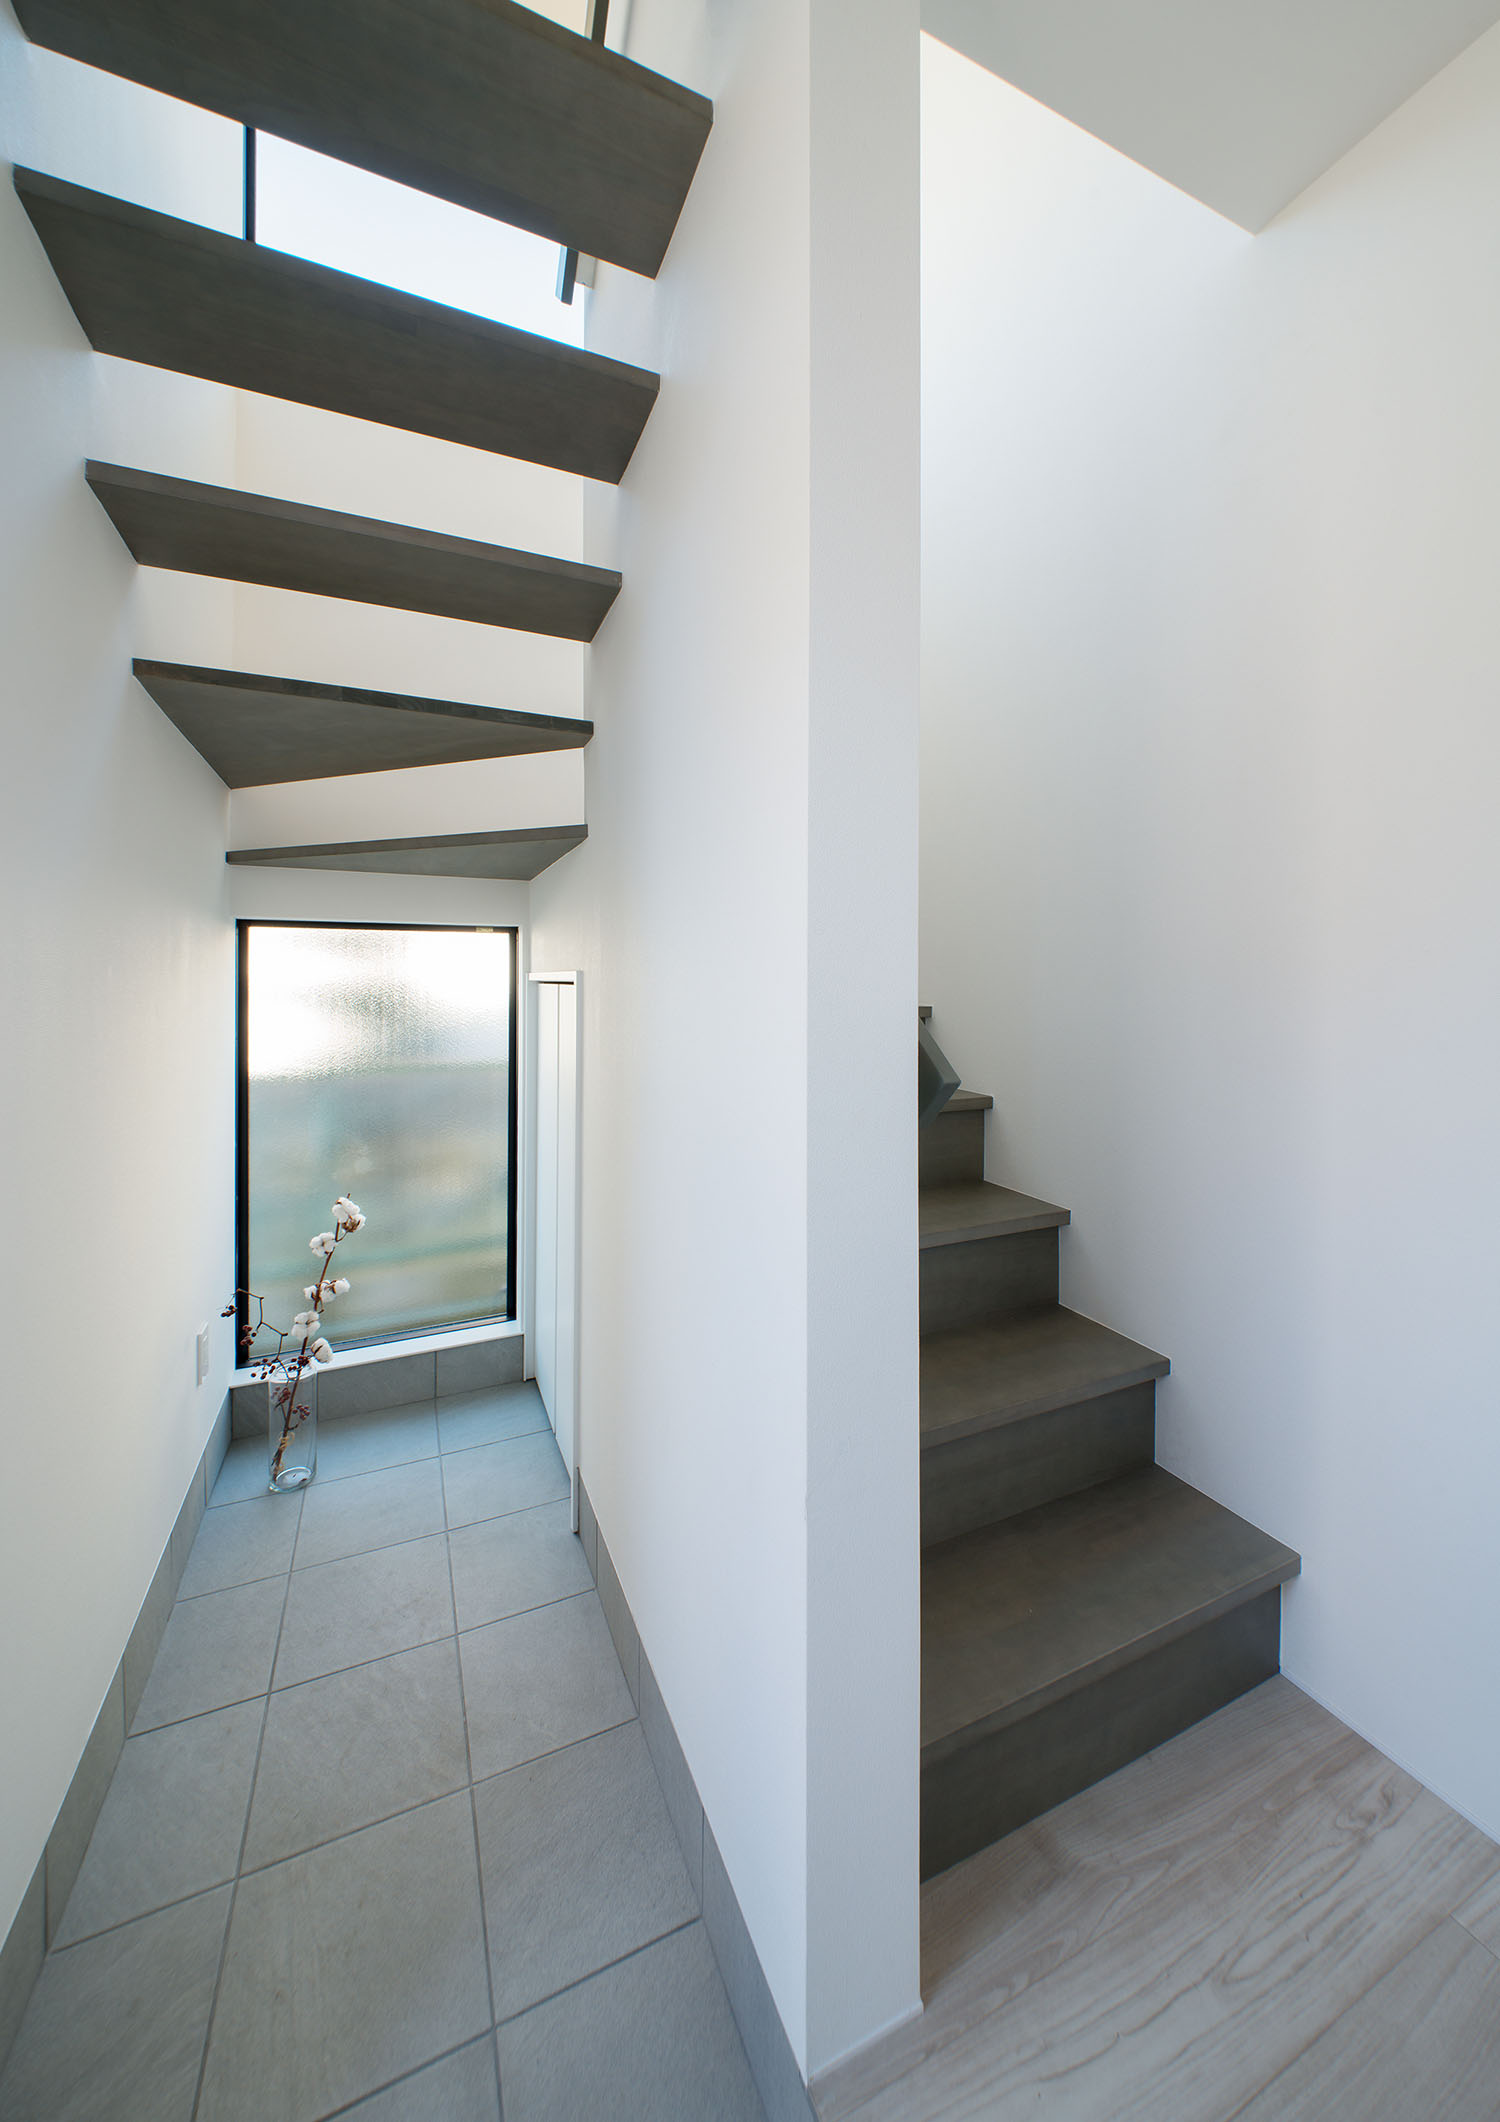 箱型階段からスケルトン階段へと切り替わっている階段・デザイン住宅